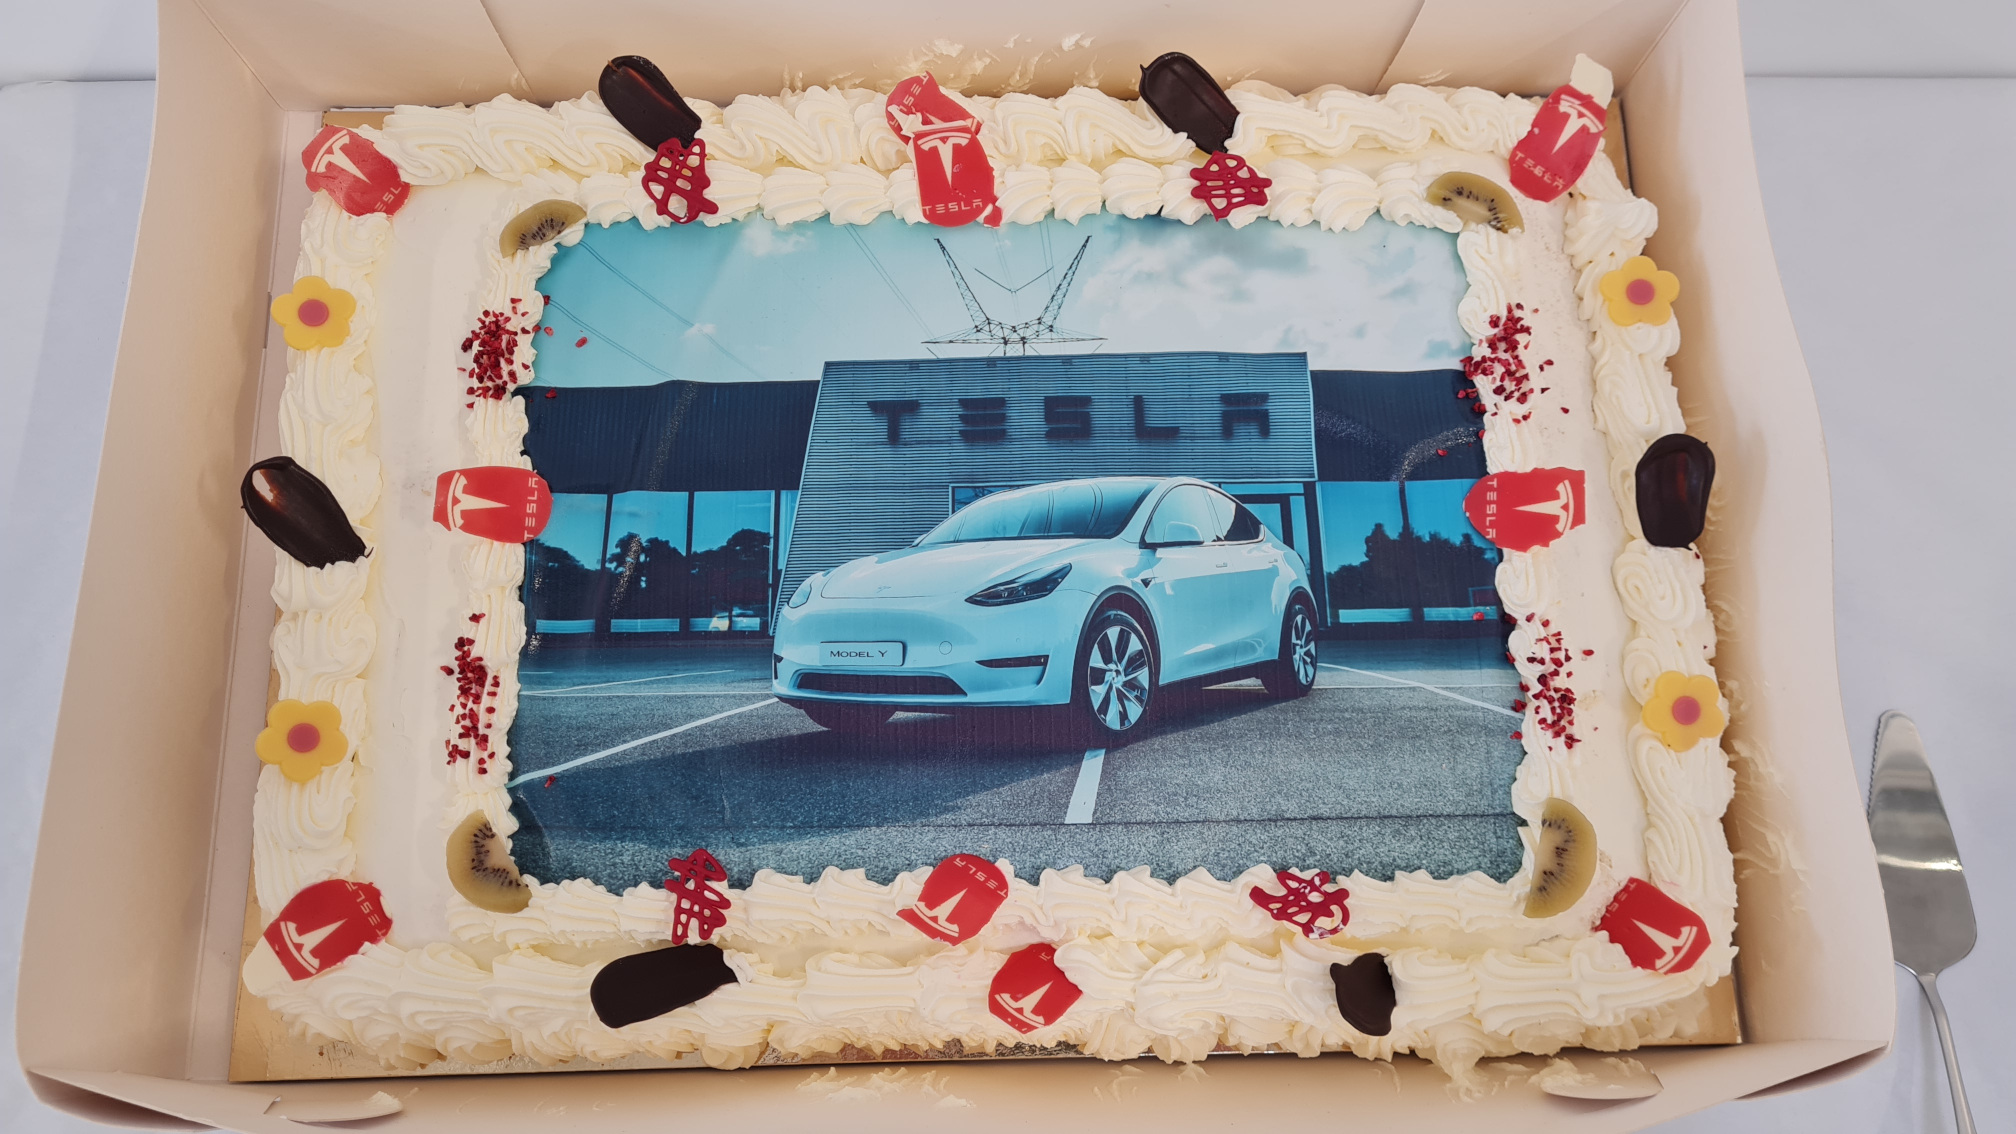 Tesla Odense opening 2021-09-08 - The cake